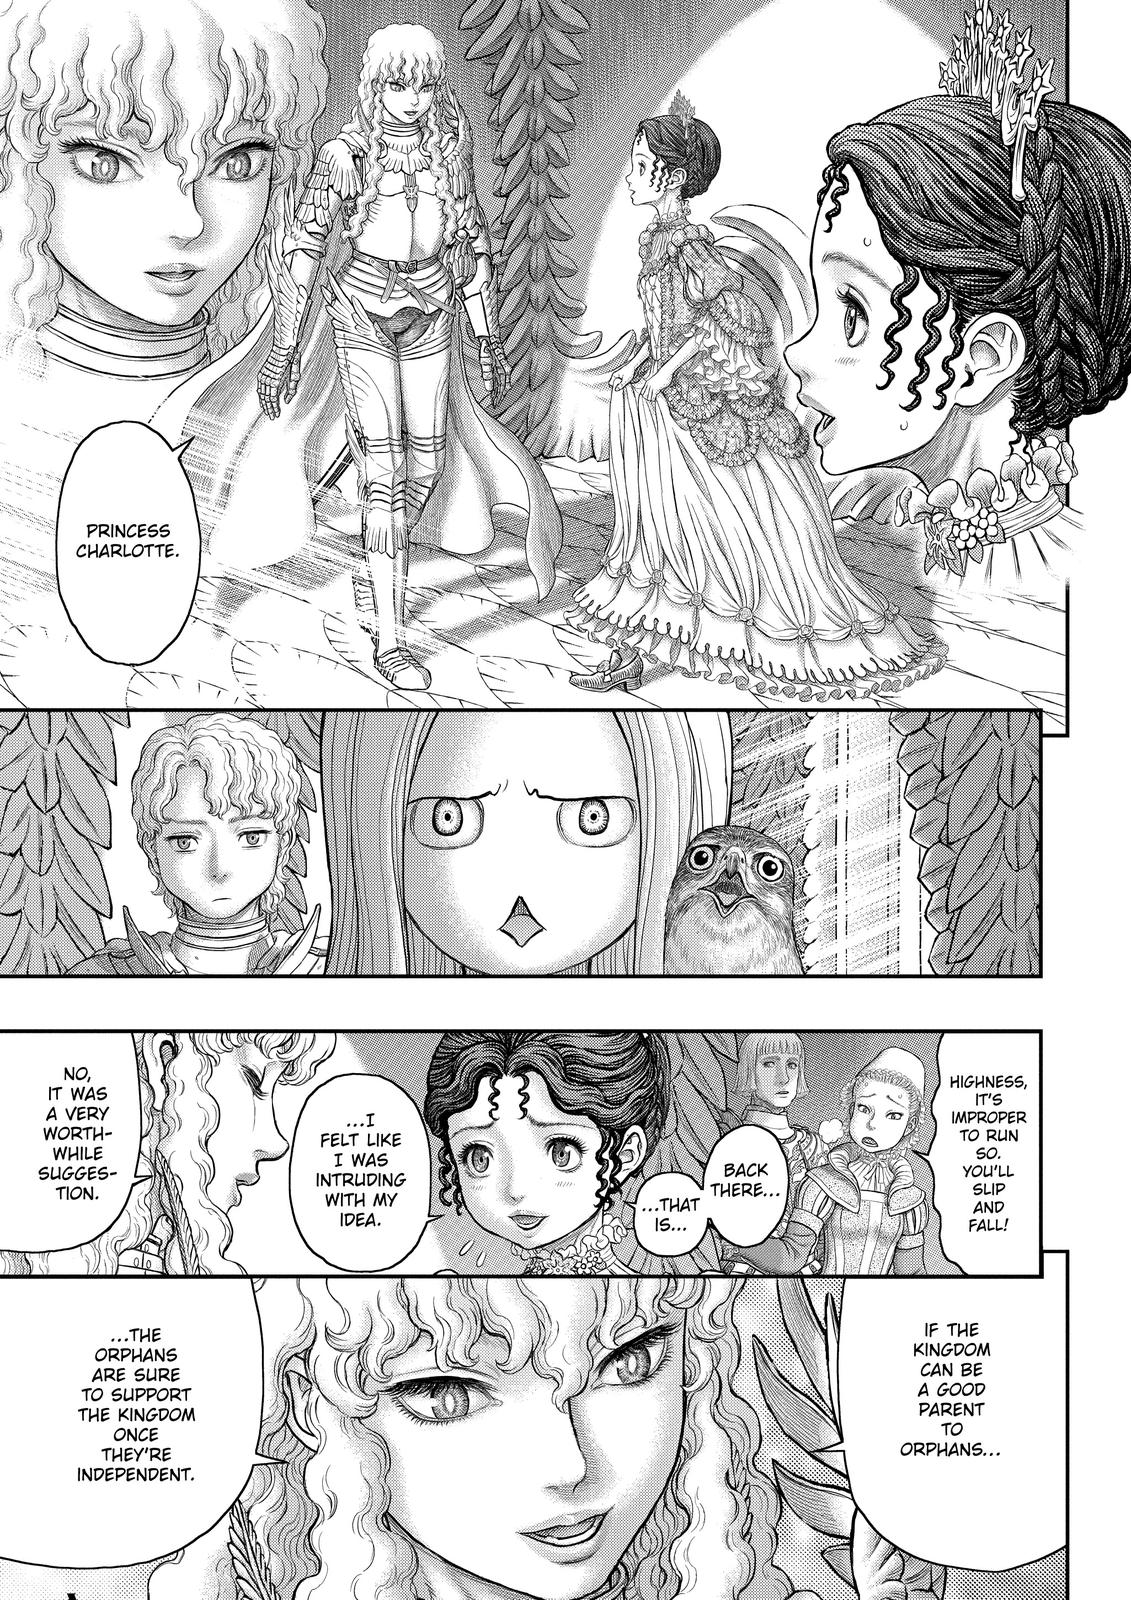 Berserk Manga Chapter 358 image 26